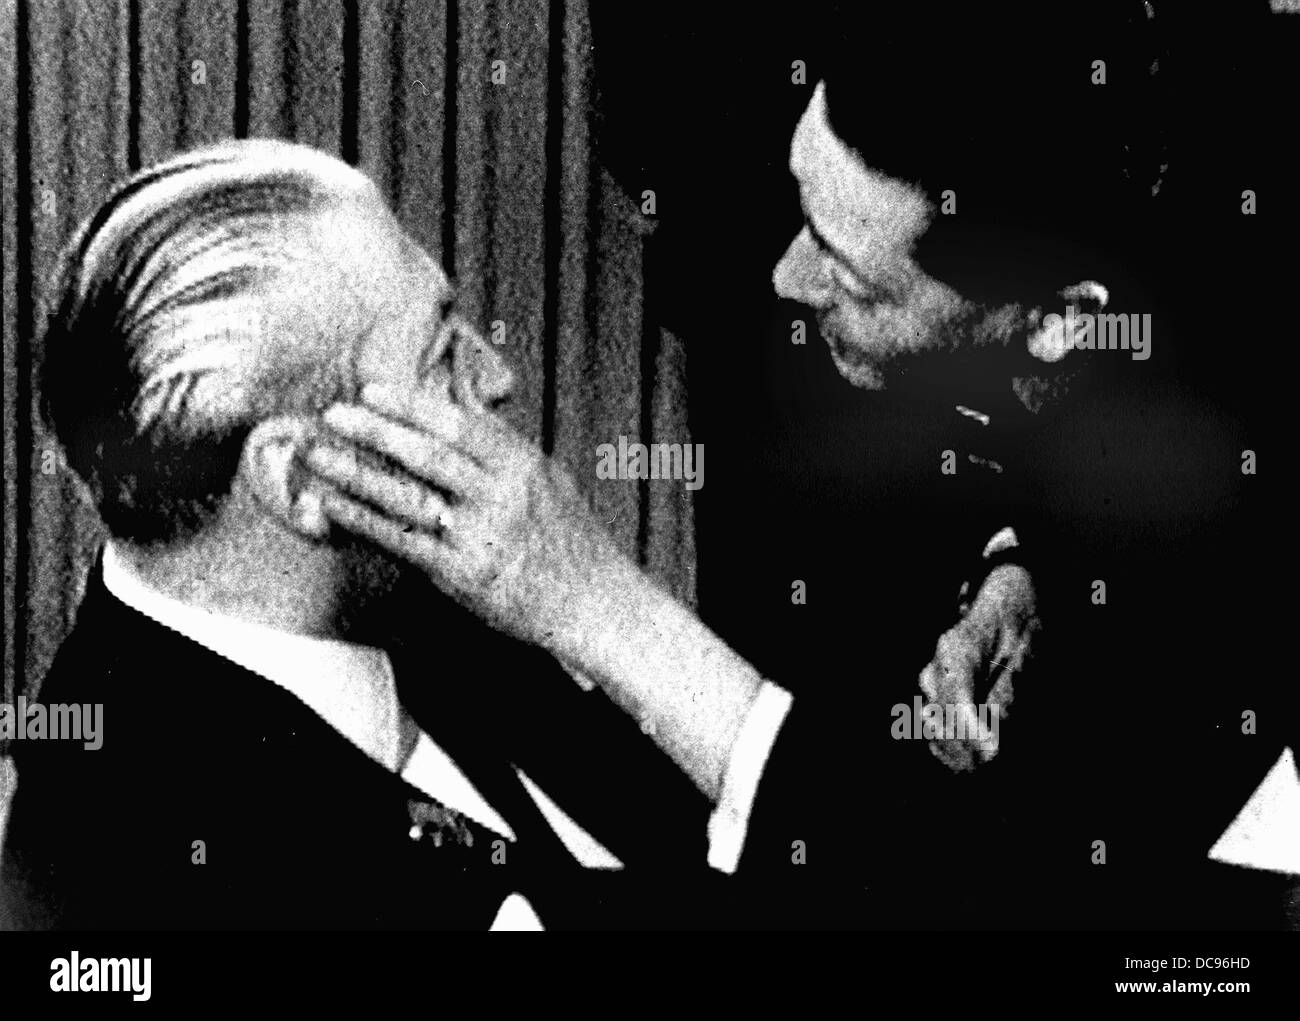 Bundeskanzler Kiesinger (l) bekommt seine verletzten Auges geprüft. Am 7. November fotografiert während der CDU-Parteitag 1968, nachdem Beate Klarsfeld Kiesinger ins Gesicht geschlagen hatte. Stockfoto